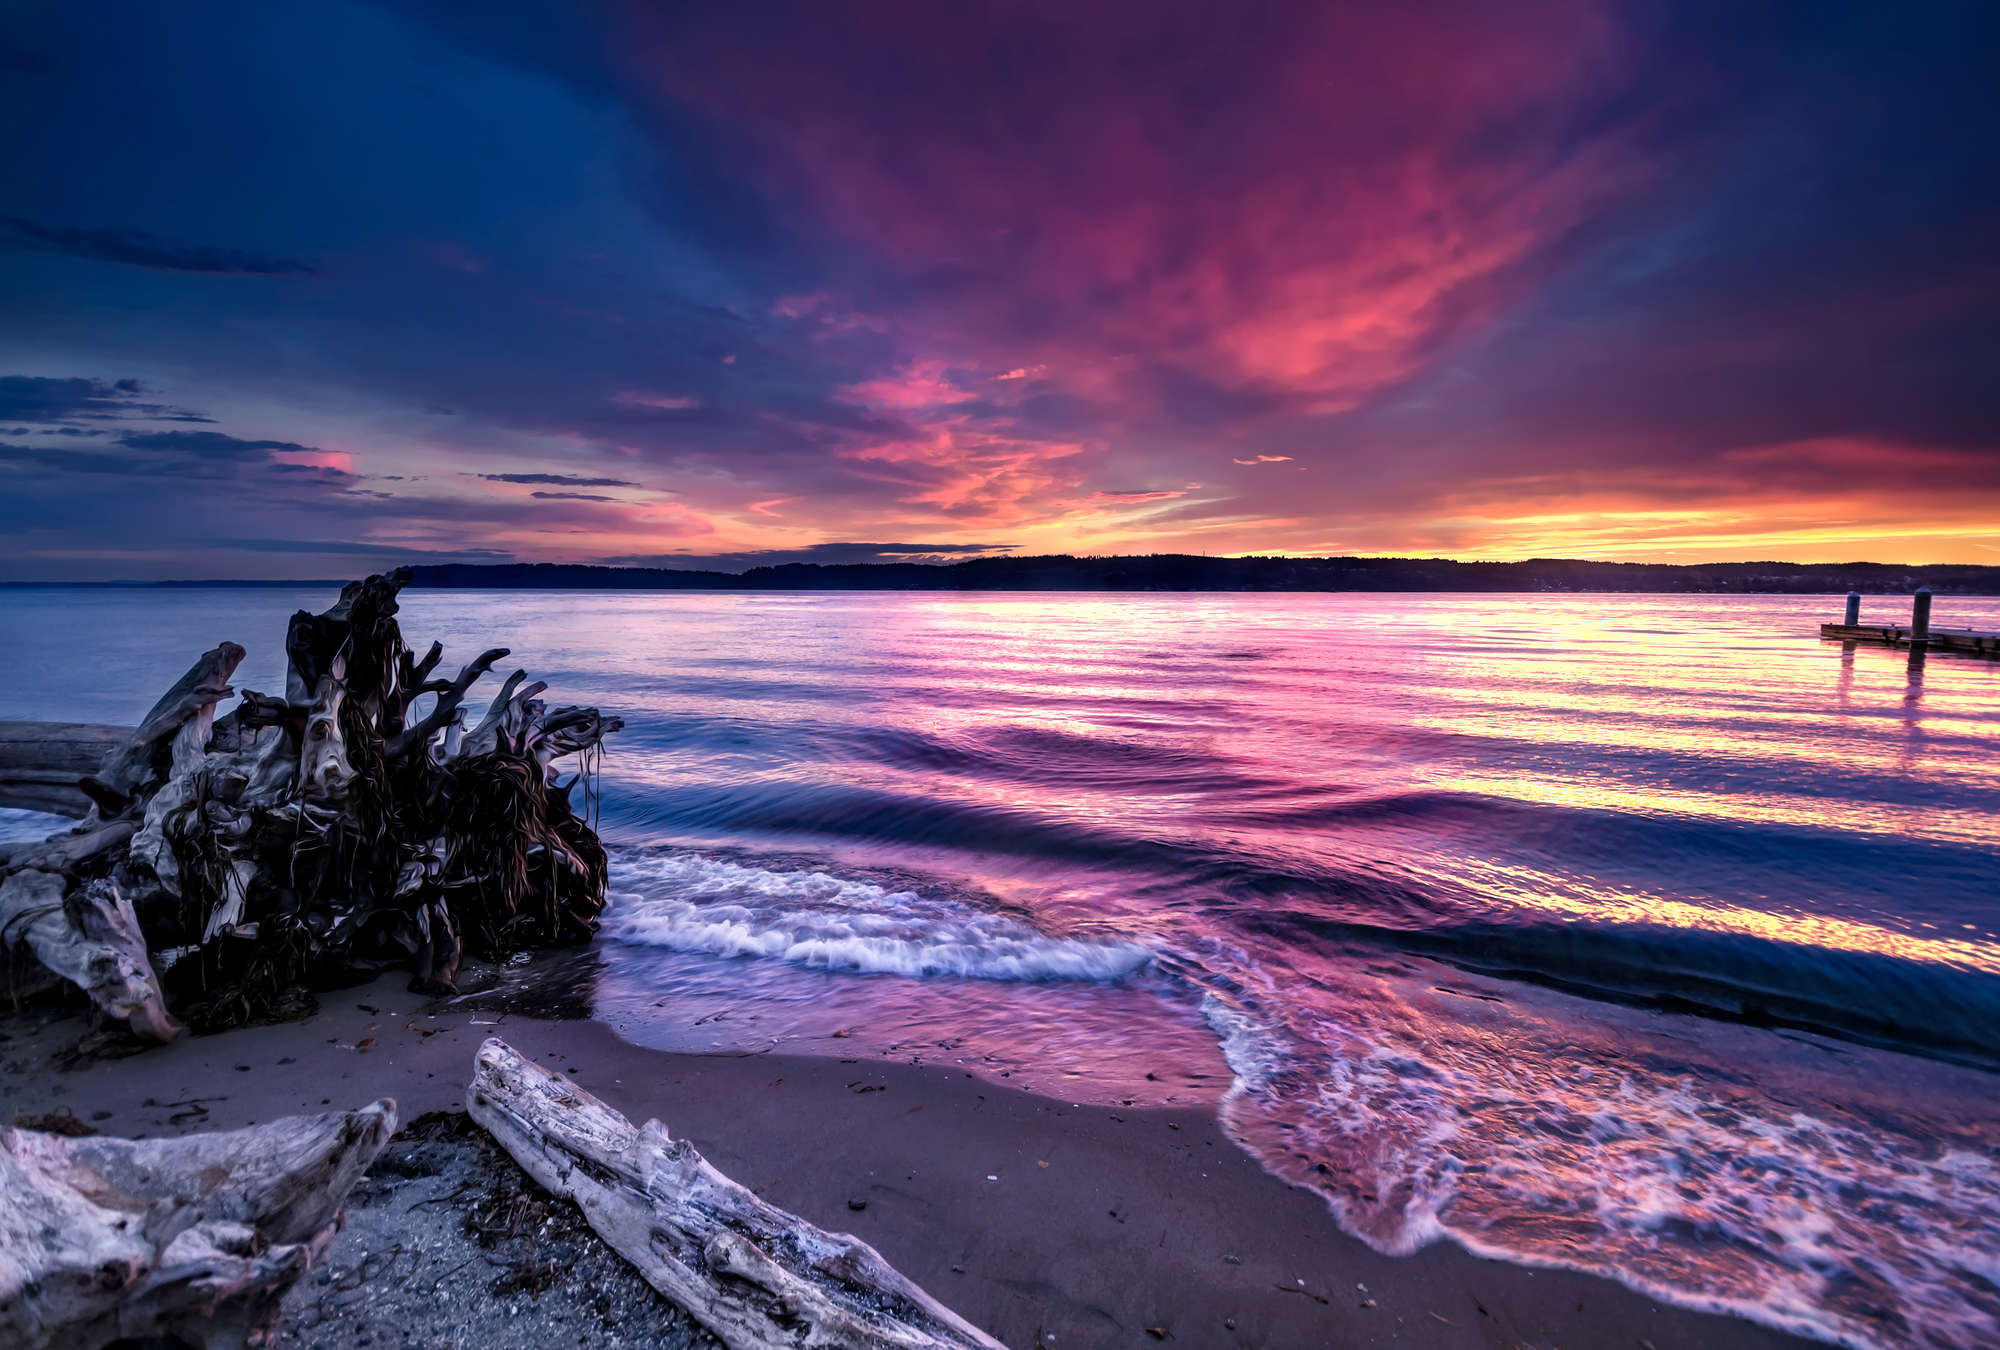             Fototapete Abendlicht am See in malerischen Farben
        